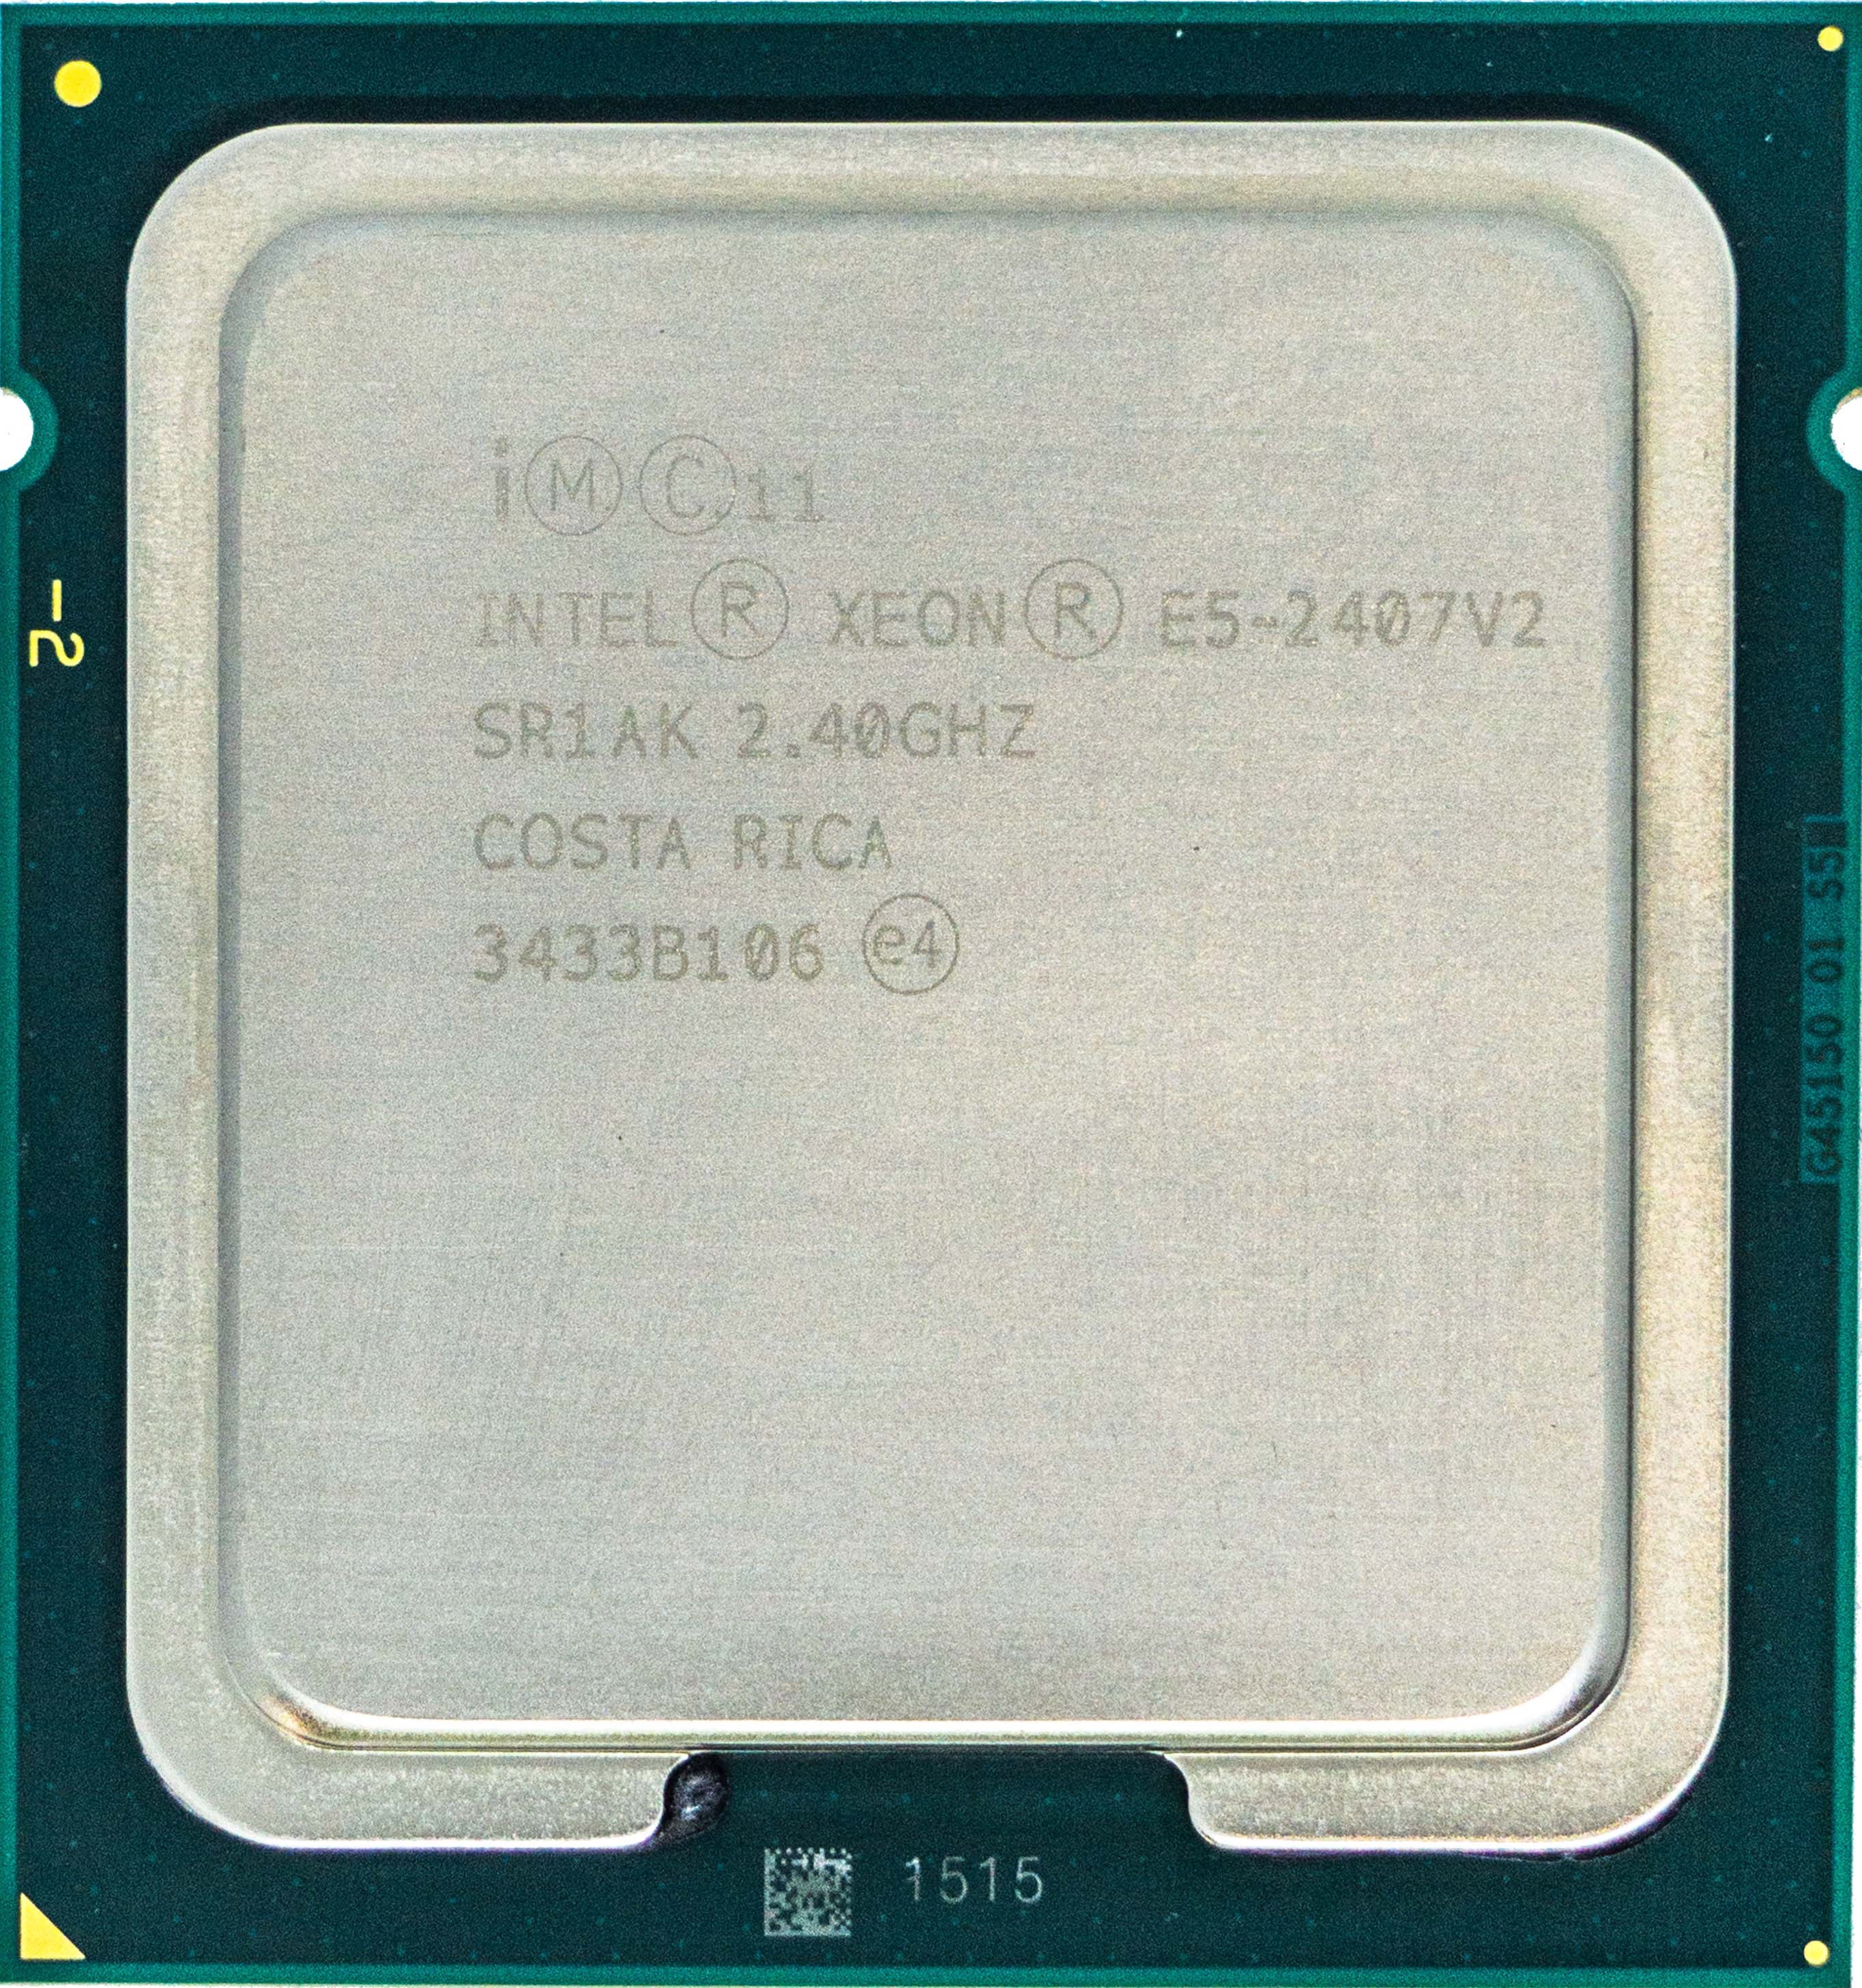 Intel Xeon E5-2407 V2 (SR1AK) 2.40Ghz Quad (4) Core LGA1356 80W CPU